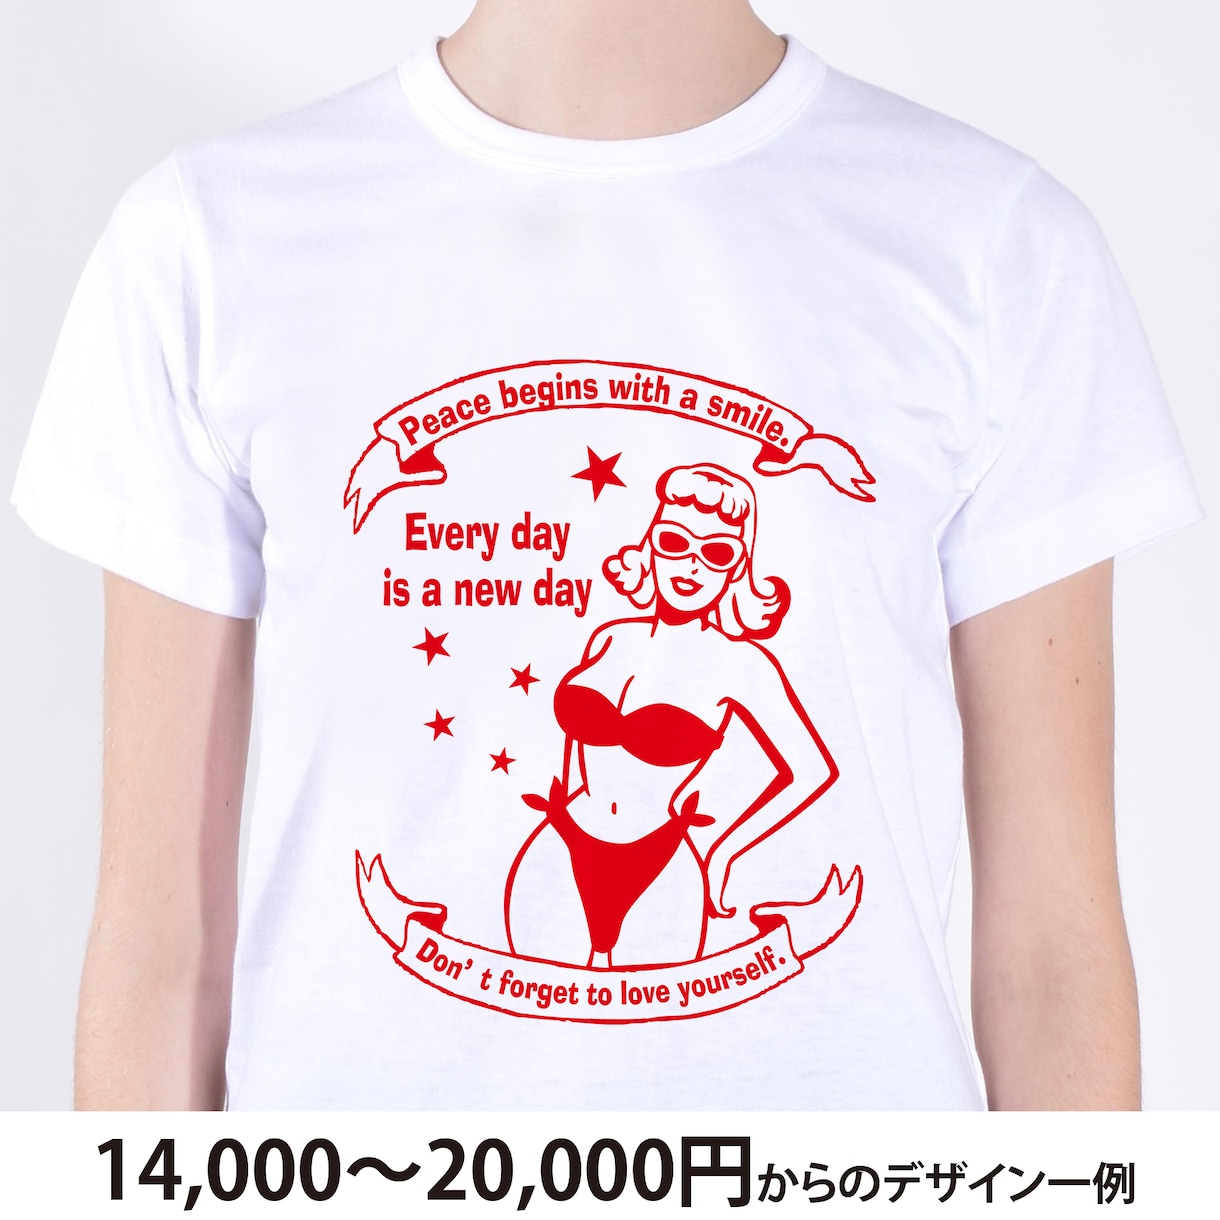 Tシャツデザインデータを1.4万円※から作成します 貴方の作りたいをデザイン。14000円※より作成致します イメージ1